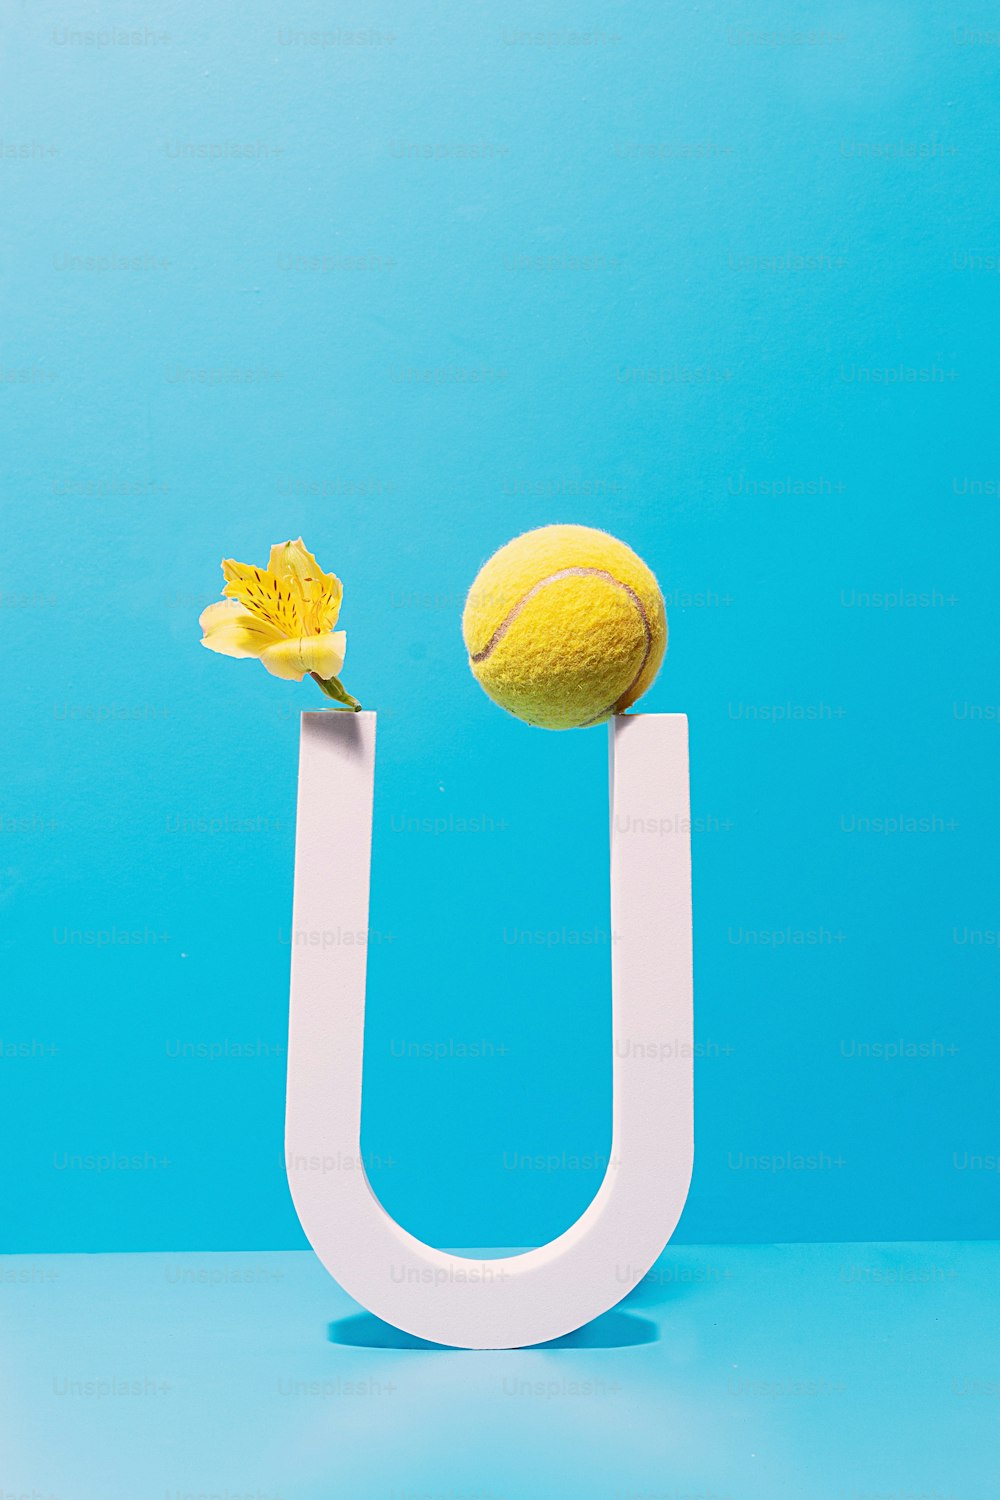 une fleur jaune et une balle de tennis sur une lettre blanche u